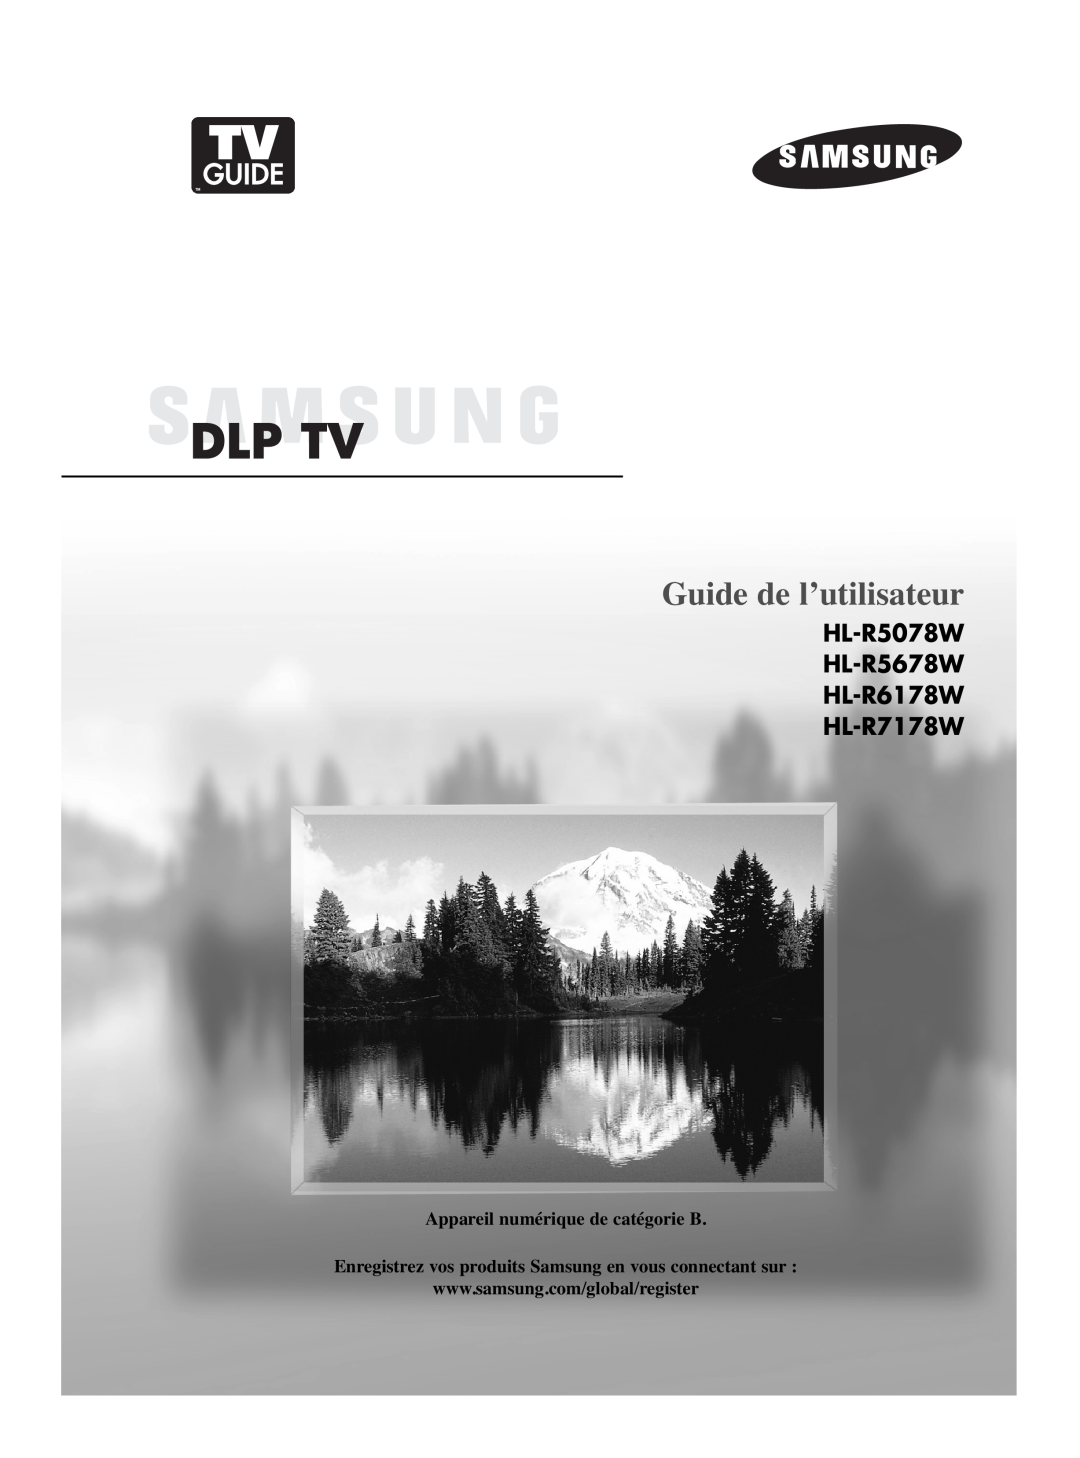 Samsung manual Guide de l’utilisateur, HL-R5078W HL-R5678W HL-R6178W HL-R7178W, Appareil numérique de catégorie B 